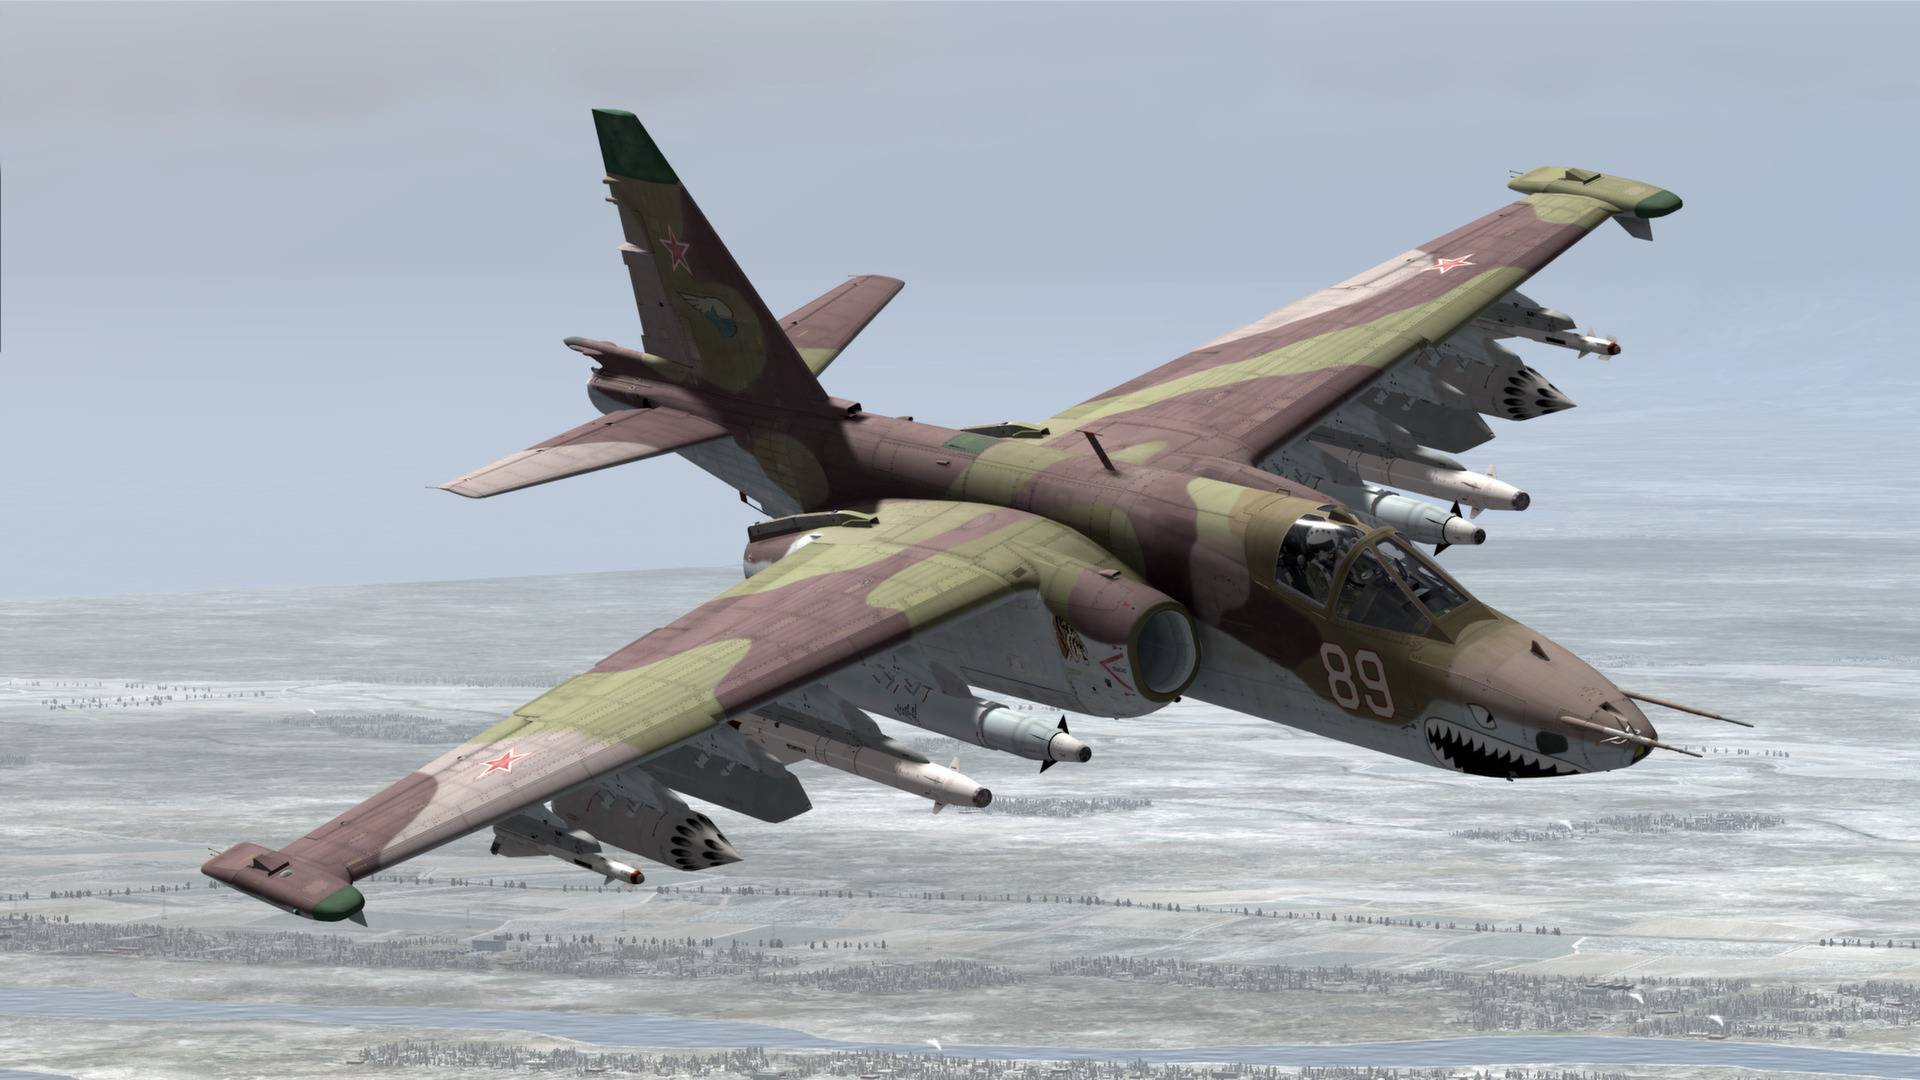 Самолет су-25 российский штурмовик